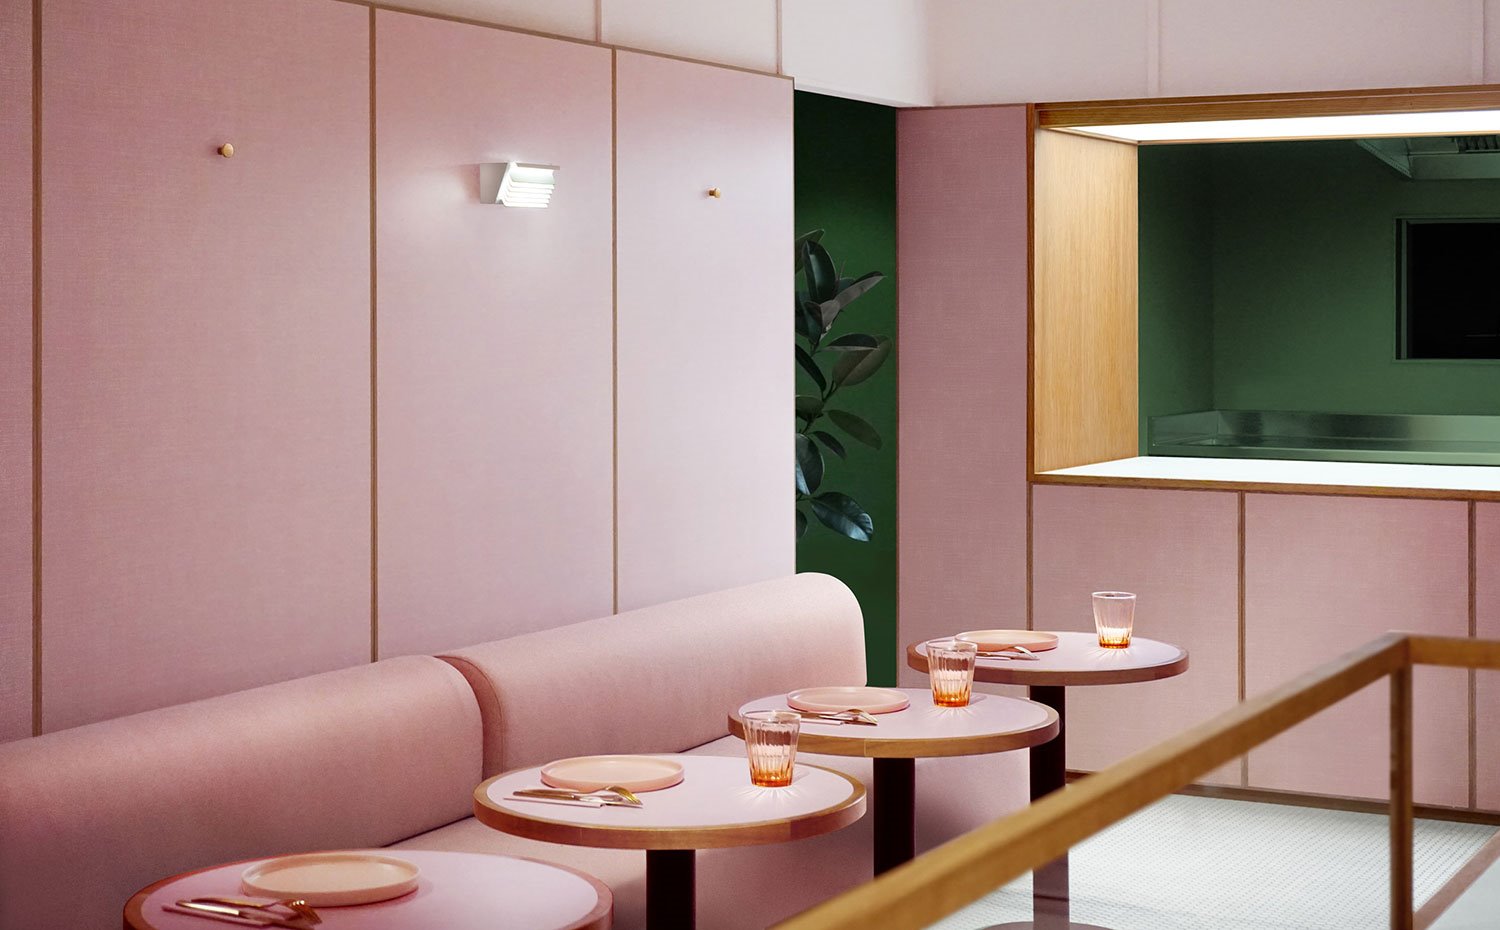 Cocina abierta con pared en verde, estructura pasaplatos en rosa y madera, bancos tapizados en rosa, mesas circulares en rosa con vasos de cristal y vajilla color salmón, apique en pared